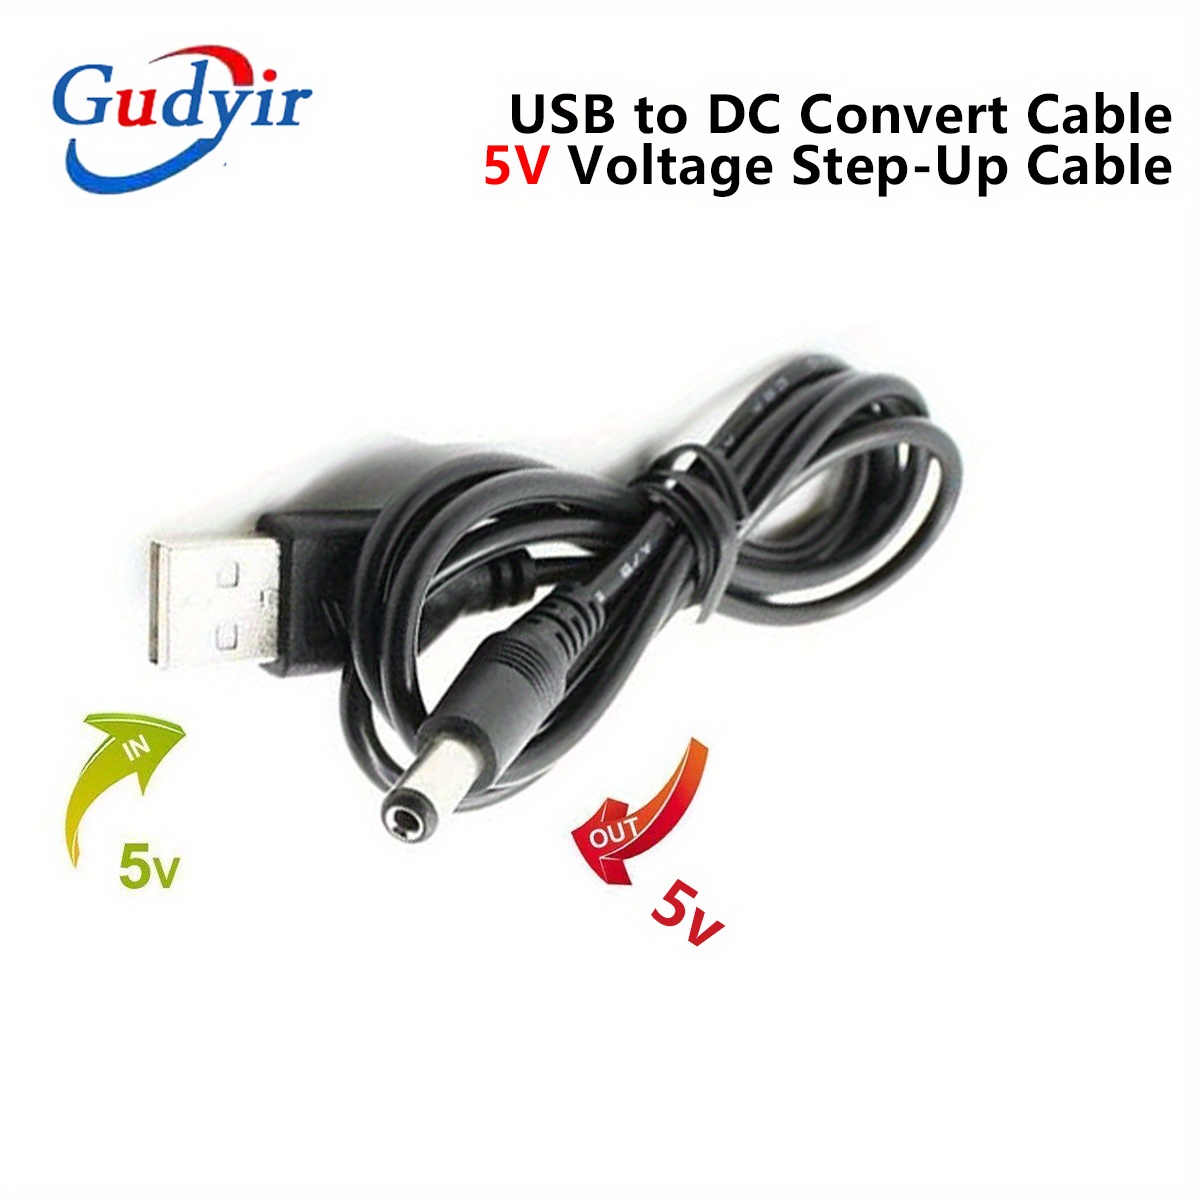 Cable Conversión Usb Cc 5v 5v 9v 12v Cable Aumento Voltaje 5,5x2